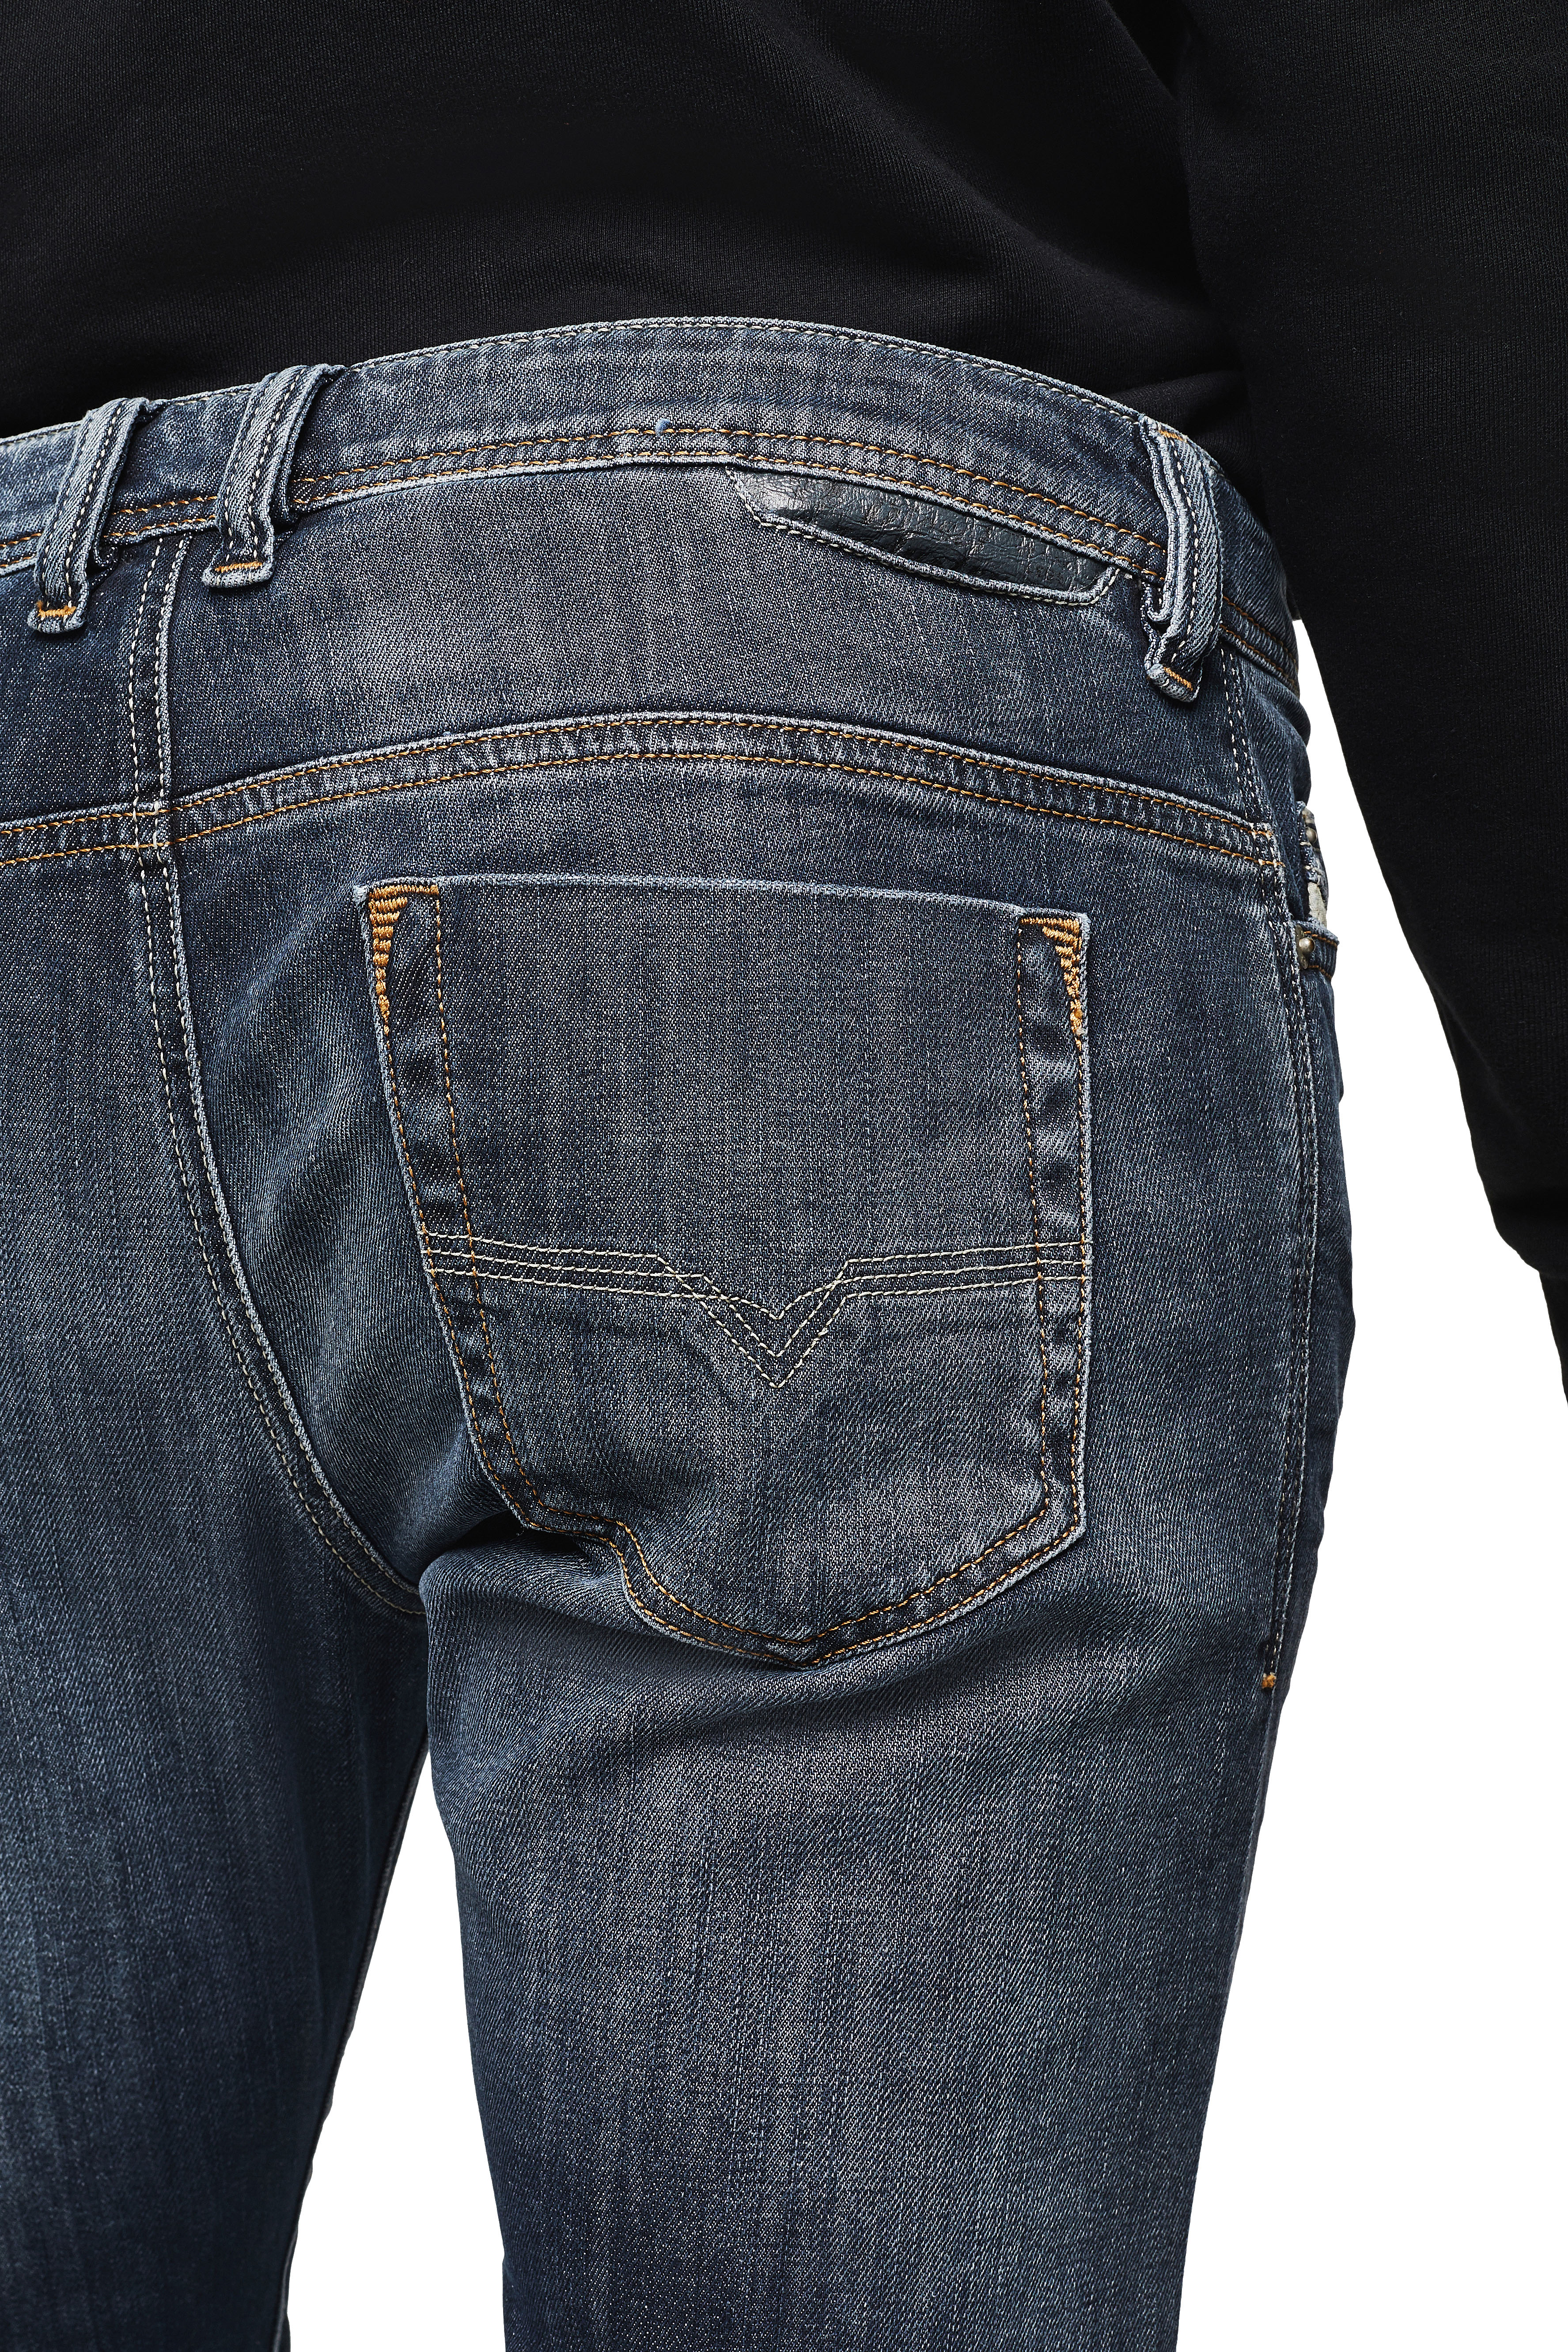 radar excitation Coast Men's Jeans: Skinny, Slim, Straight, Bootcut | Diesel